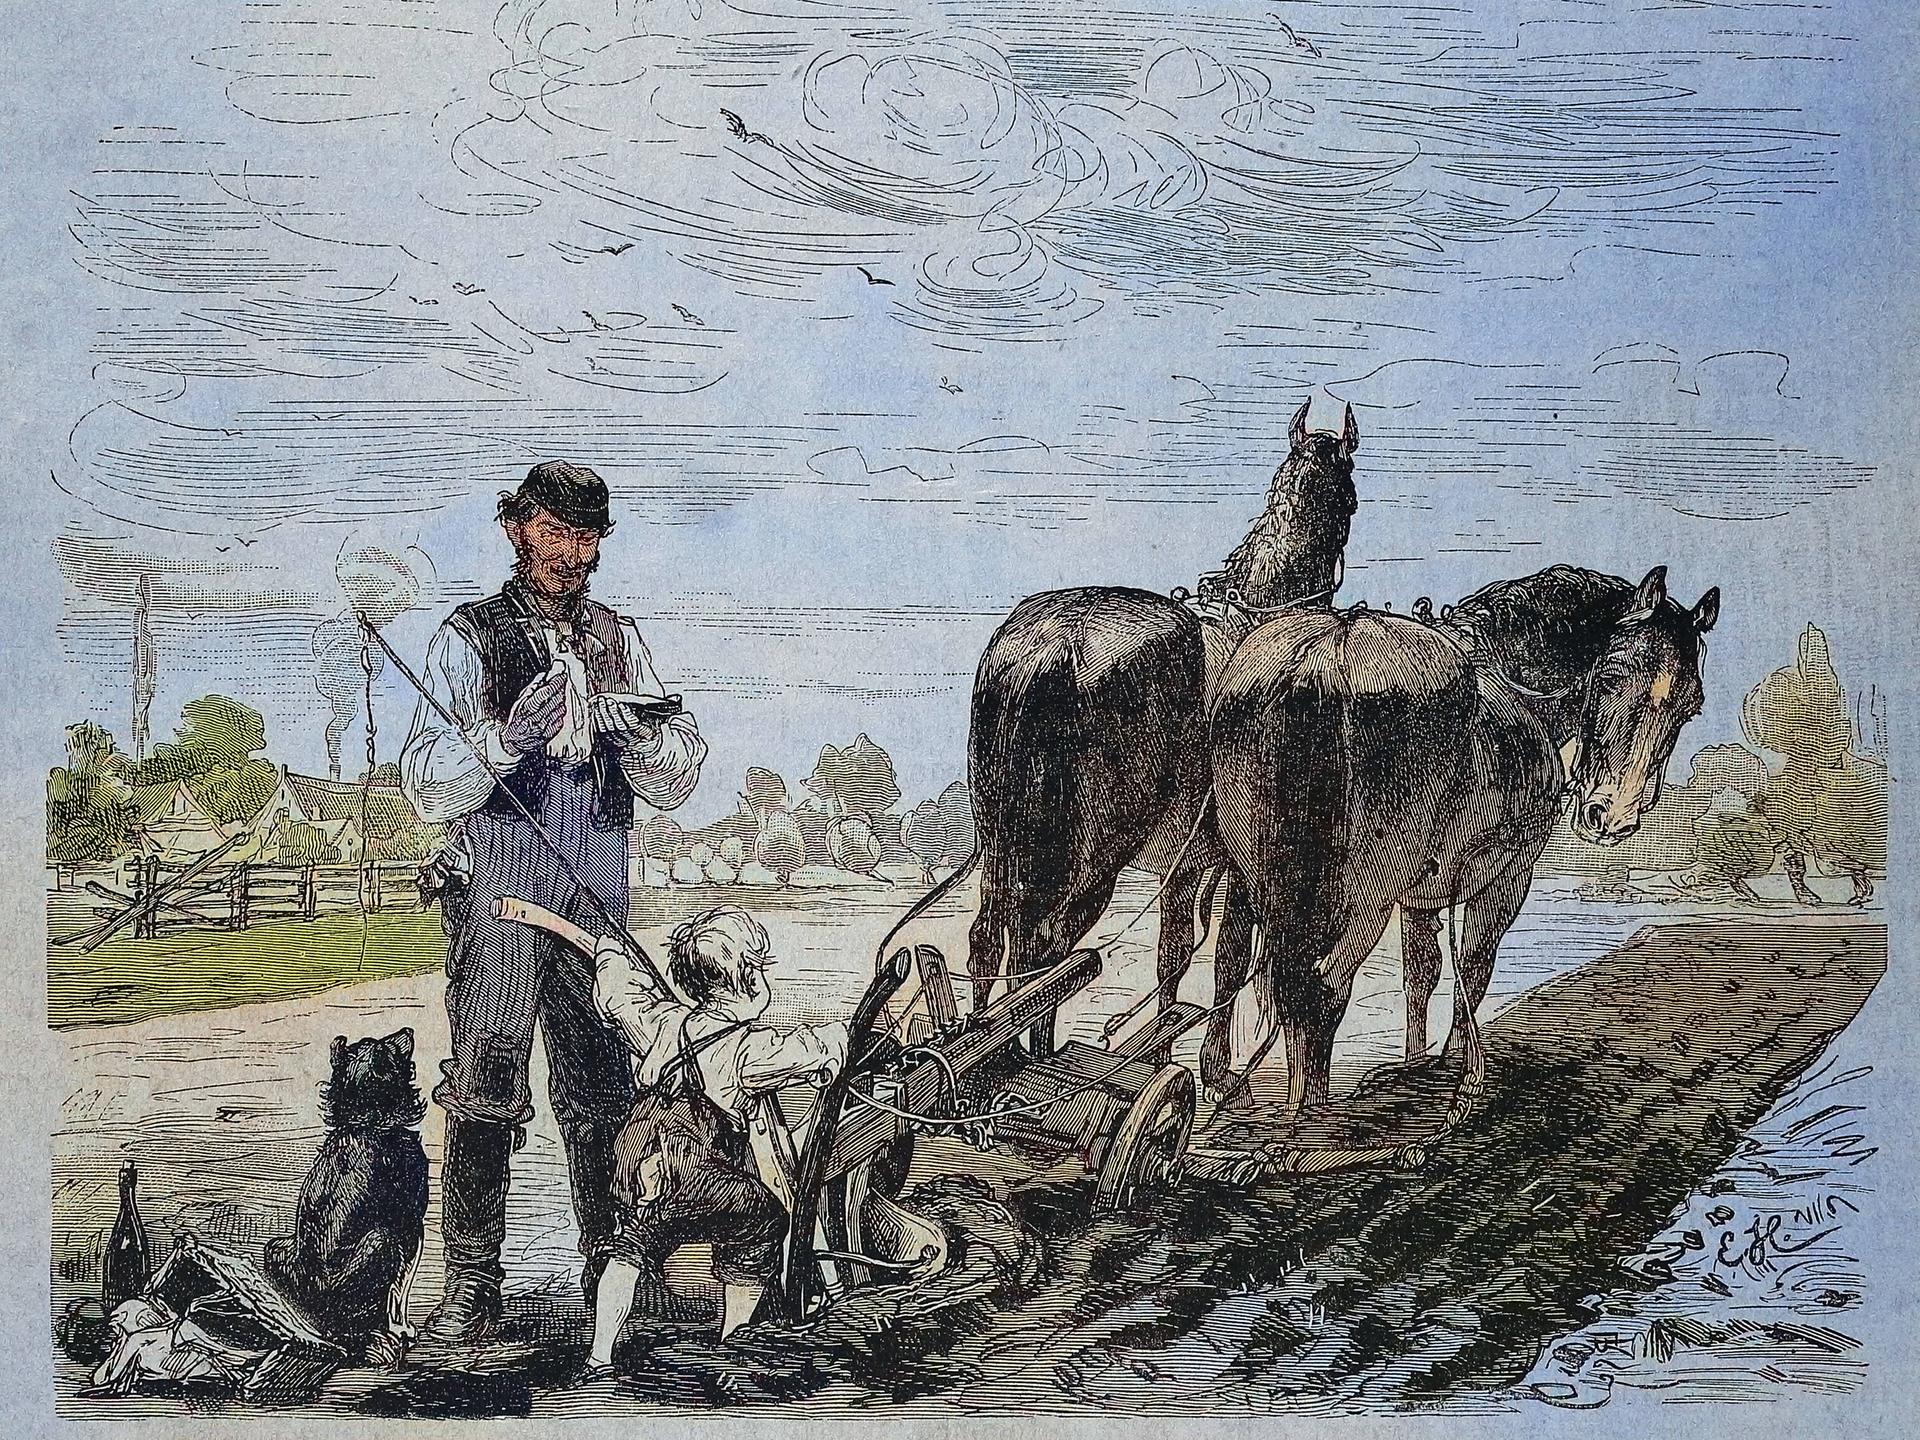 Eine Zeichnung. Ein kleiner Junge steht hinter zwei Pferden, die vor einen Pflug gespannt sind. Neben dem Jungen steht der Bauer.